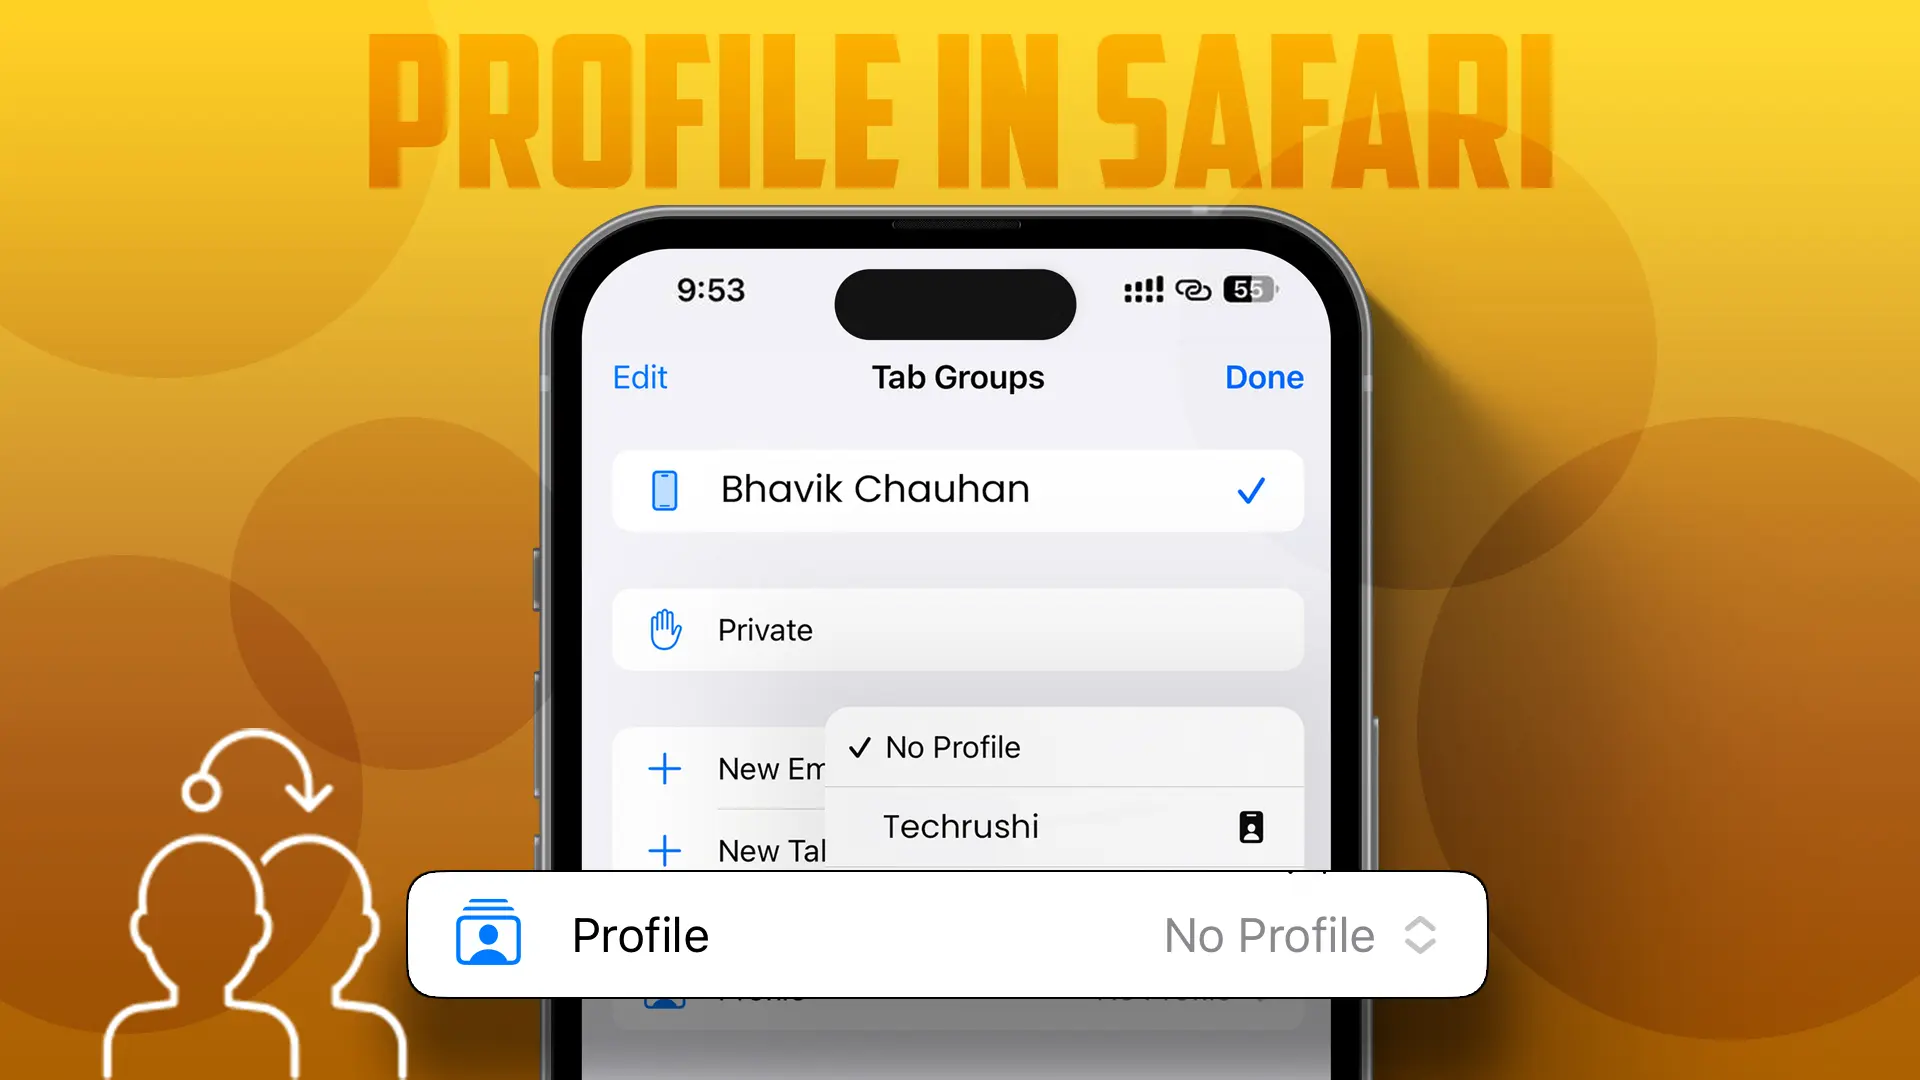 How to Create Profile in Safari on iPhone